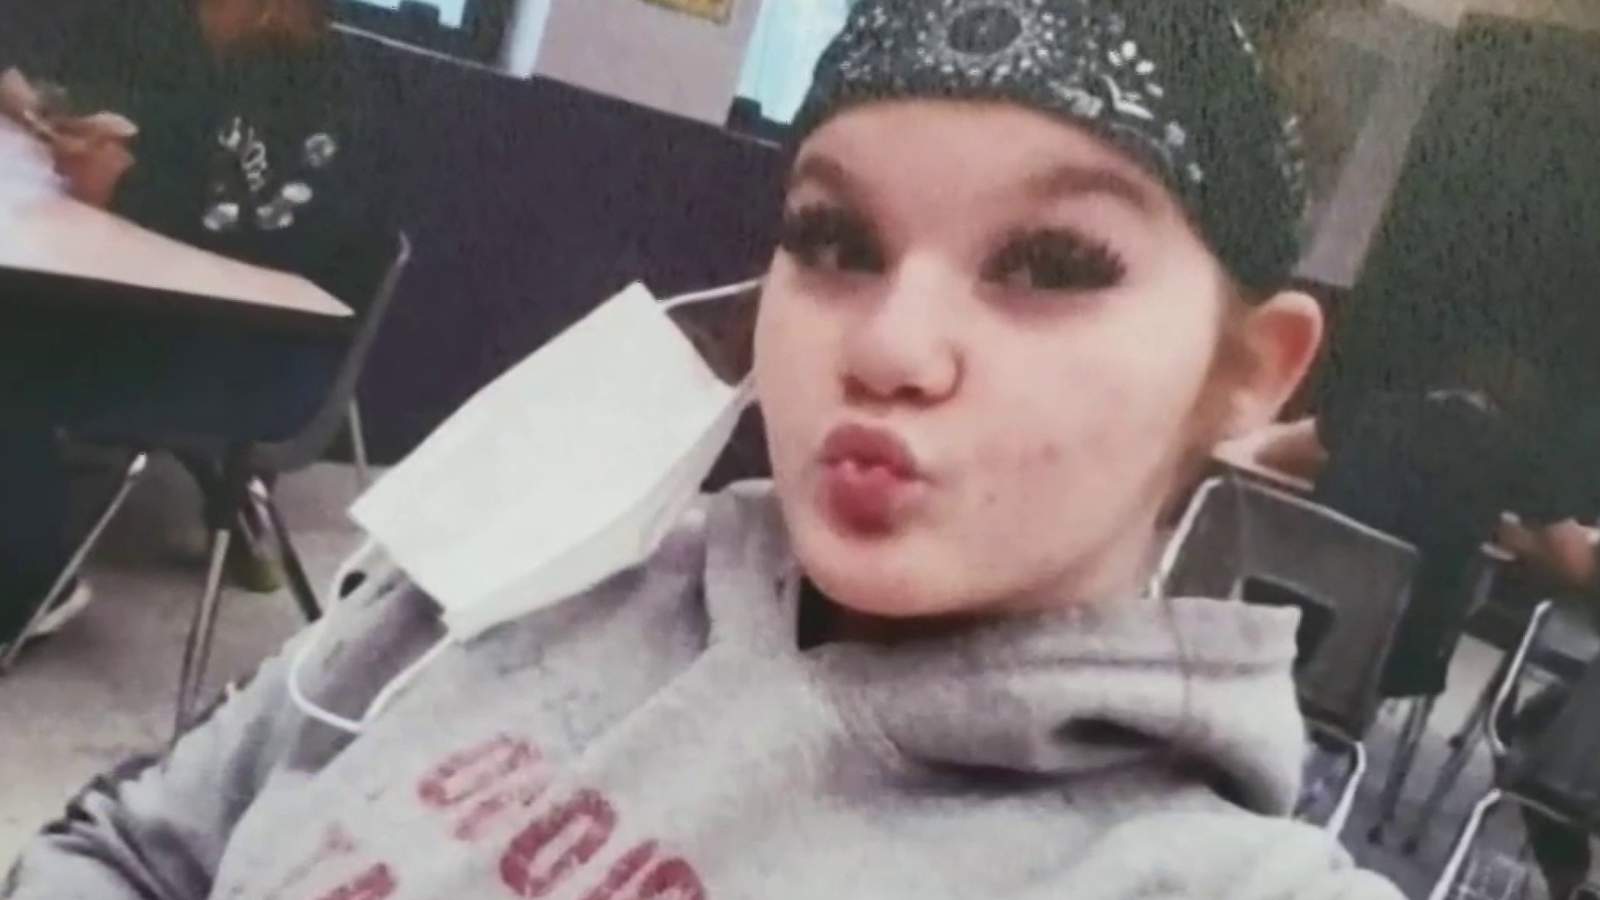 3 arrested in Amber Alert after missing 11-year-old Florida girl found safe